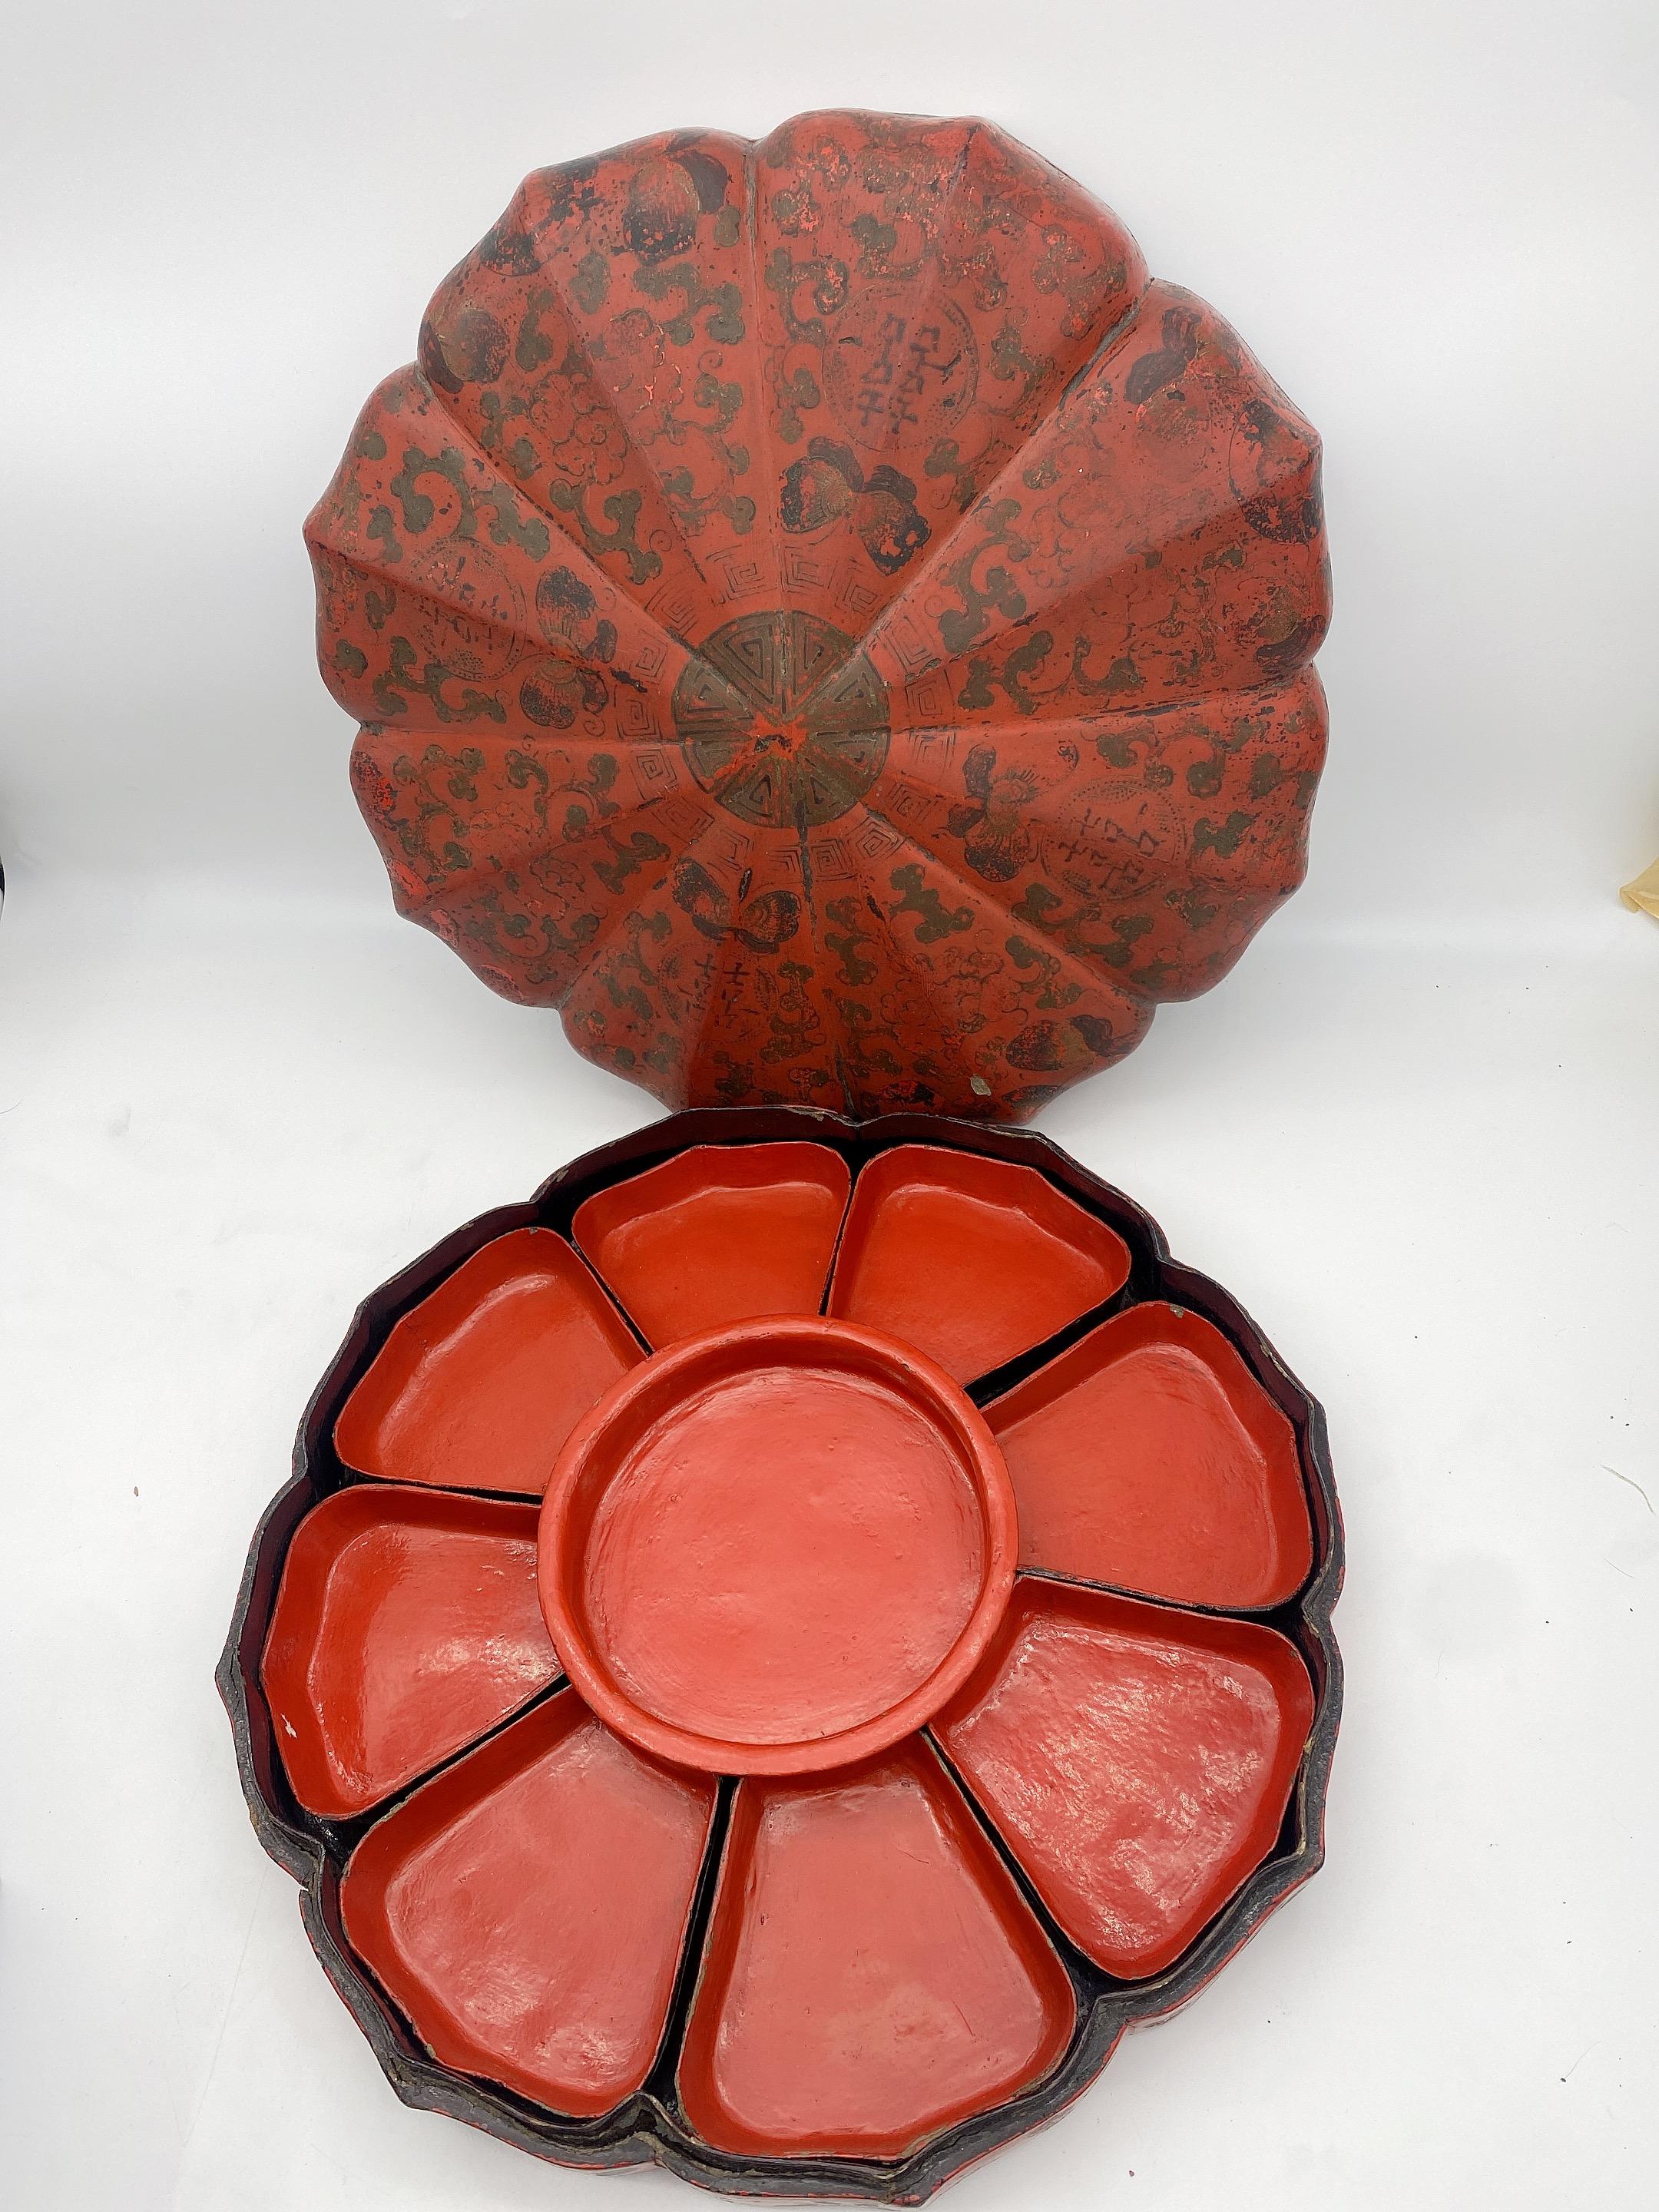 Boîte de présentation chinoise en bois laqué rouge de la dynastie Qing, belle et charmante boîte en laque rouge avec des collations populaires comme des graines de melon grillées, des fruits secs, ces objets de bon augure sont entourés d'un double